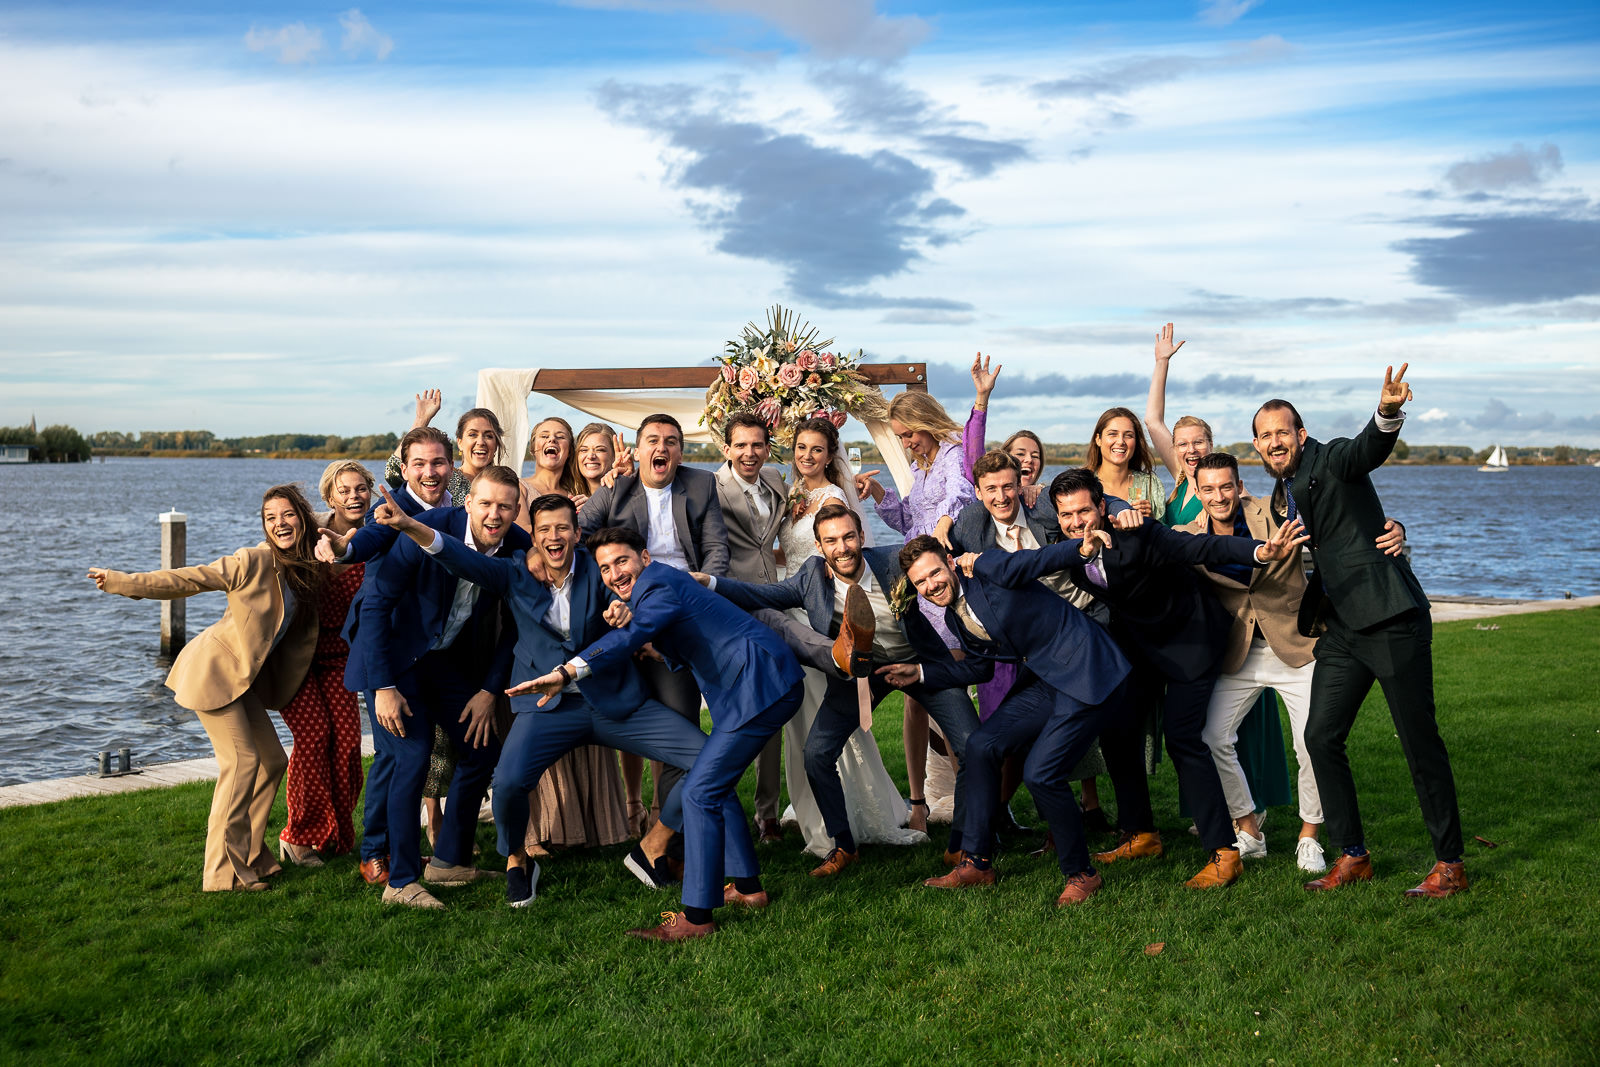 Herfstbruiloft bruiloft groepsfoto met alle vrienden Trouwfotograaf Den Haag Paco van Leeuwen